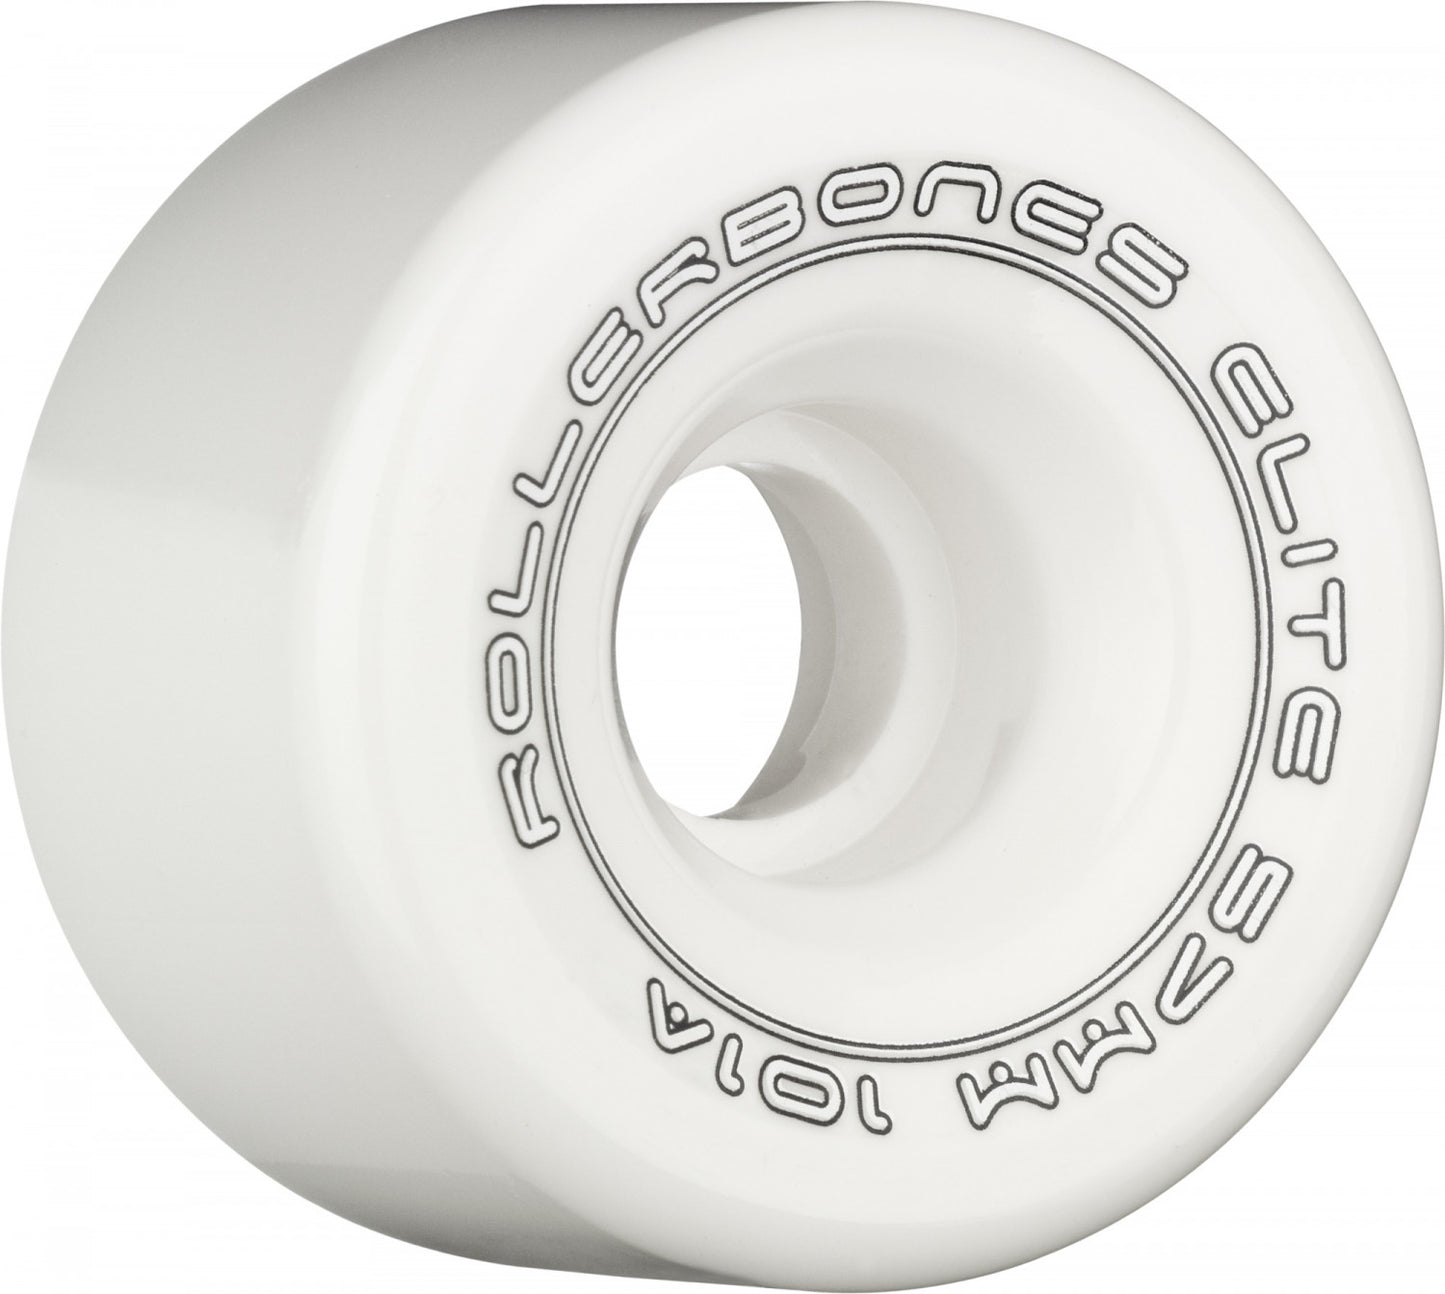 Roller Bones Elite 101a 57mm White (Set of 8) Roller Skate Wheels